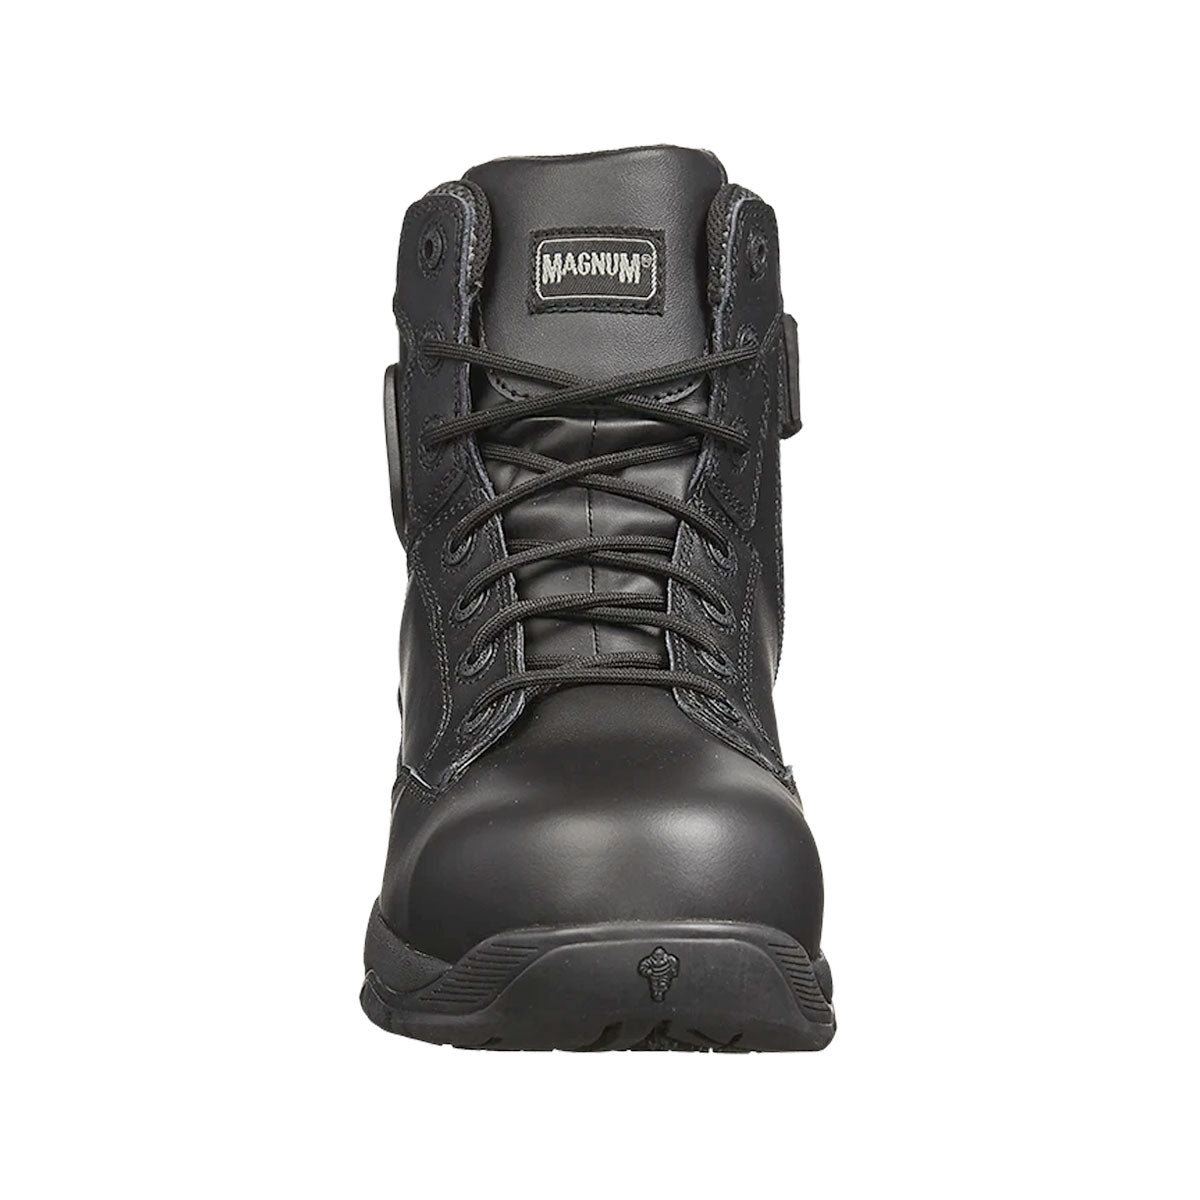 Magnum Strike Force 6.0 Leather Side-Zip Composite Toe Waterproof Men's Boot Black MSF645 Footwear Magnum Footwear Tactical Gear Supplier Tactical Distributors Australia